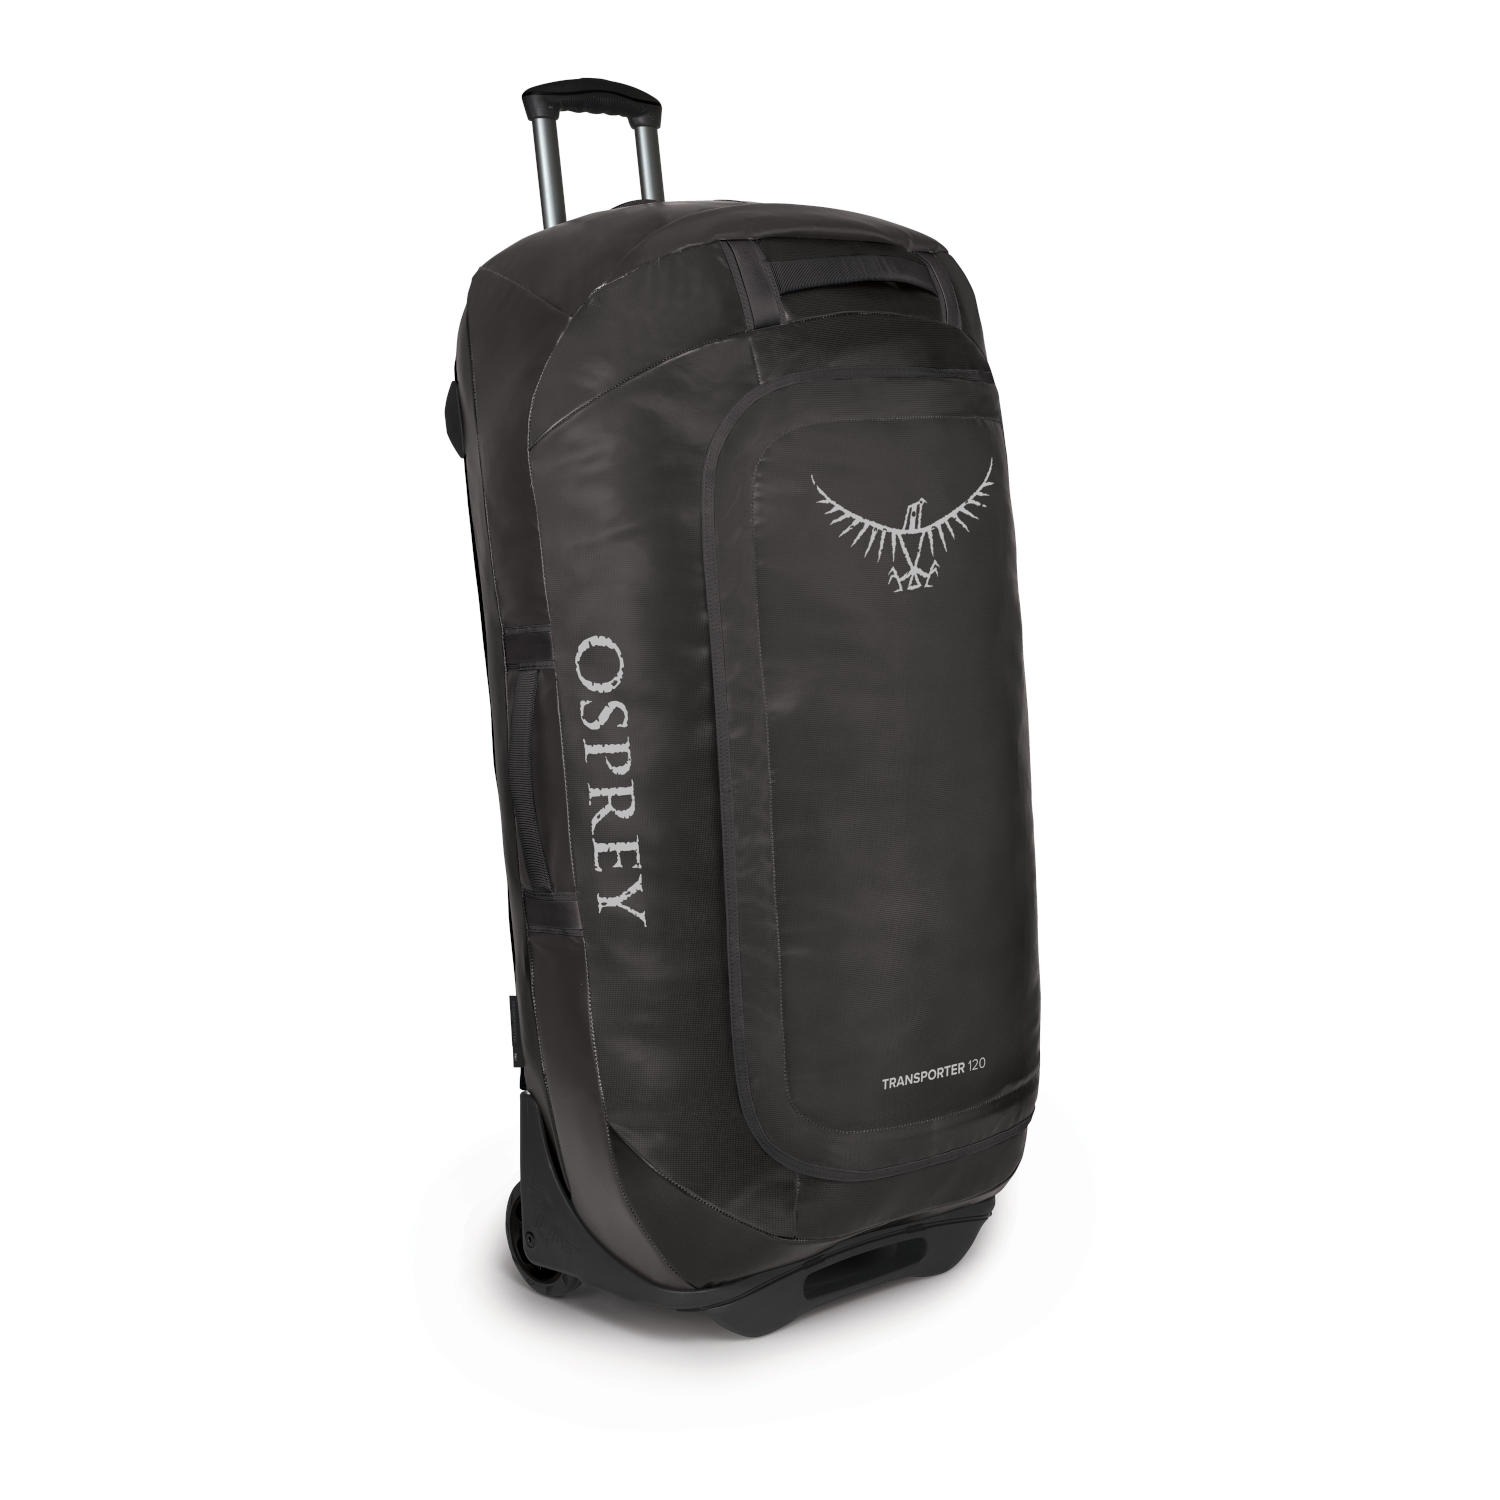 Produktbild von Osprey Rolling Transporter 120 Reisetasche - Black